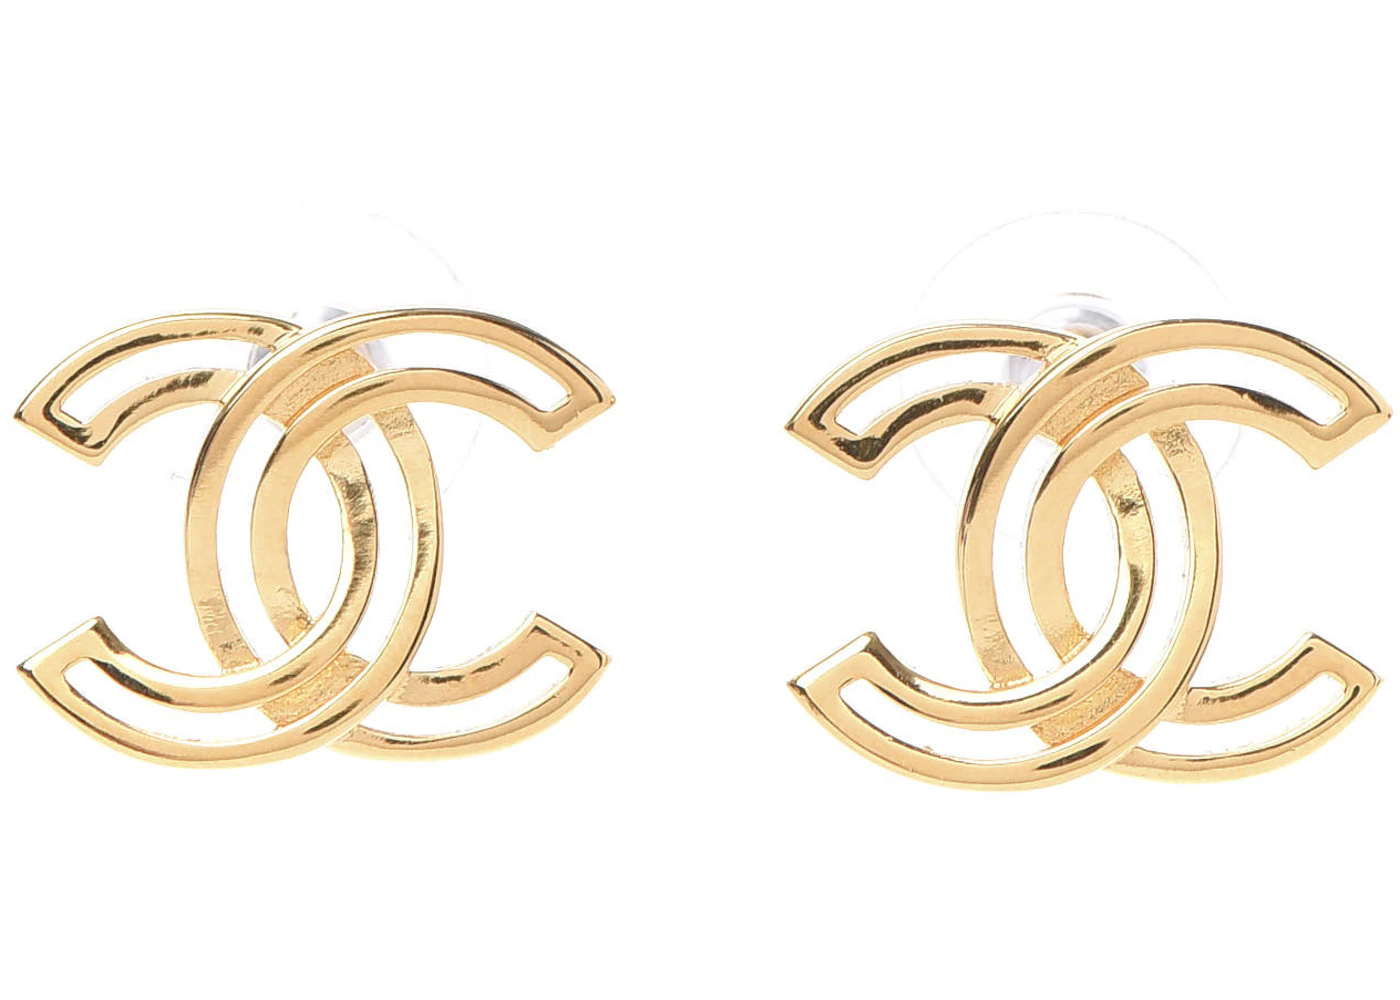 Cc earrings Chanel Gold in Metal - 31380336